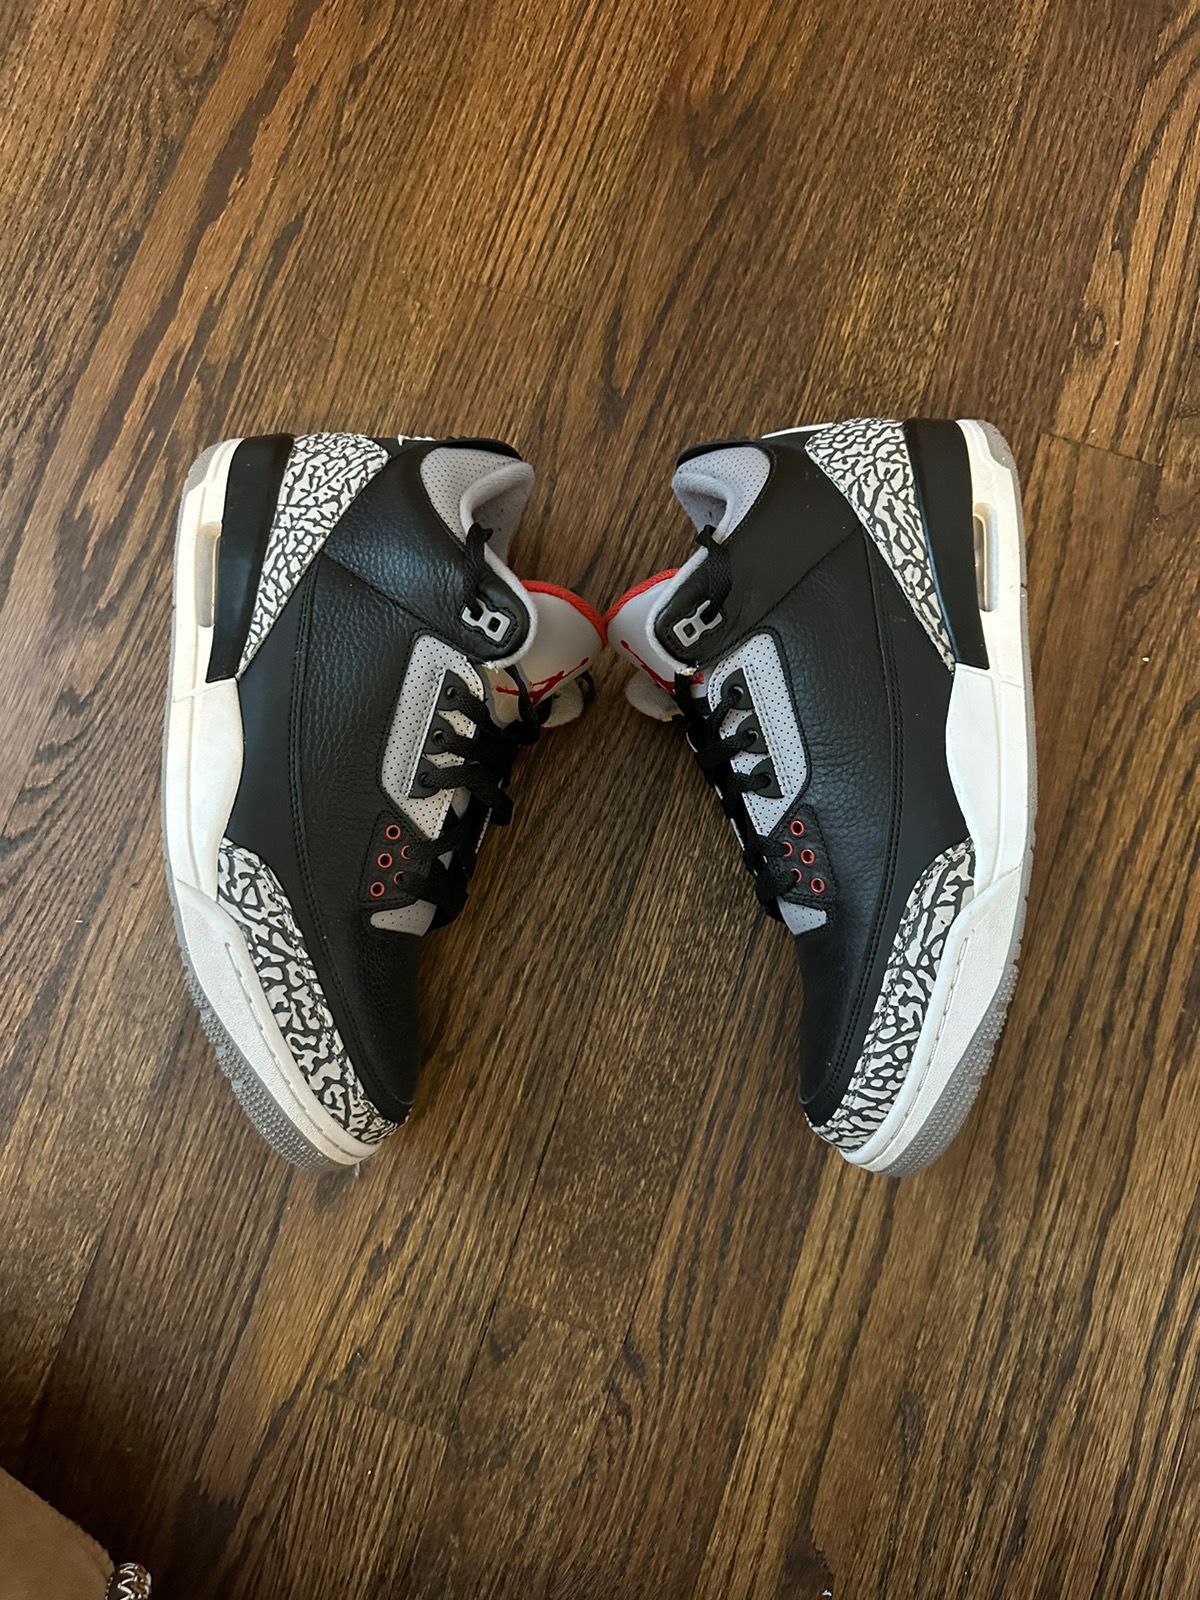 Pre-owned Jordan Nike Air Jordan 3 Black Cement 2018 Shoes